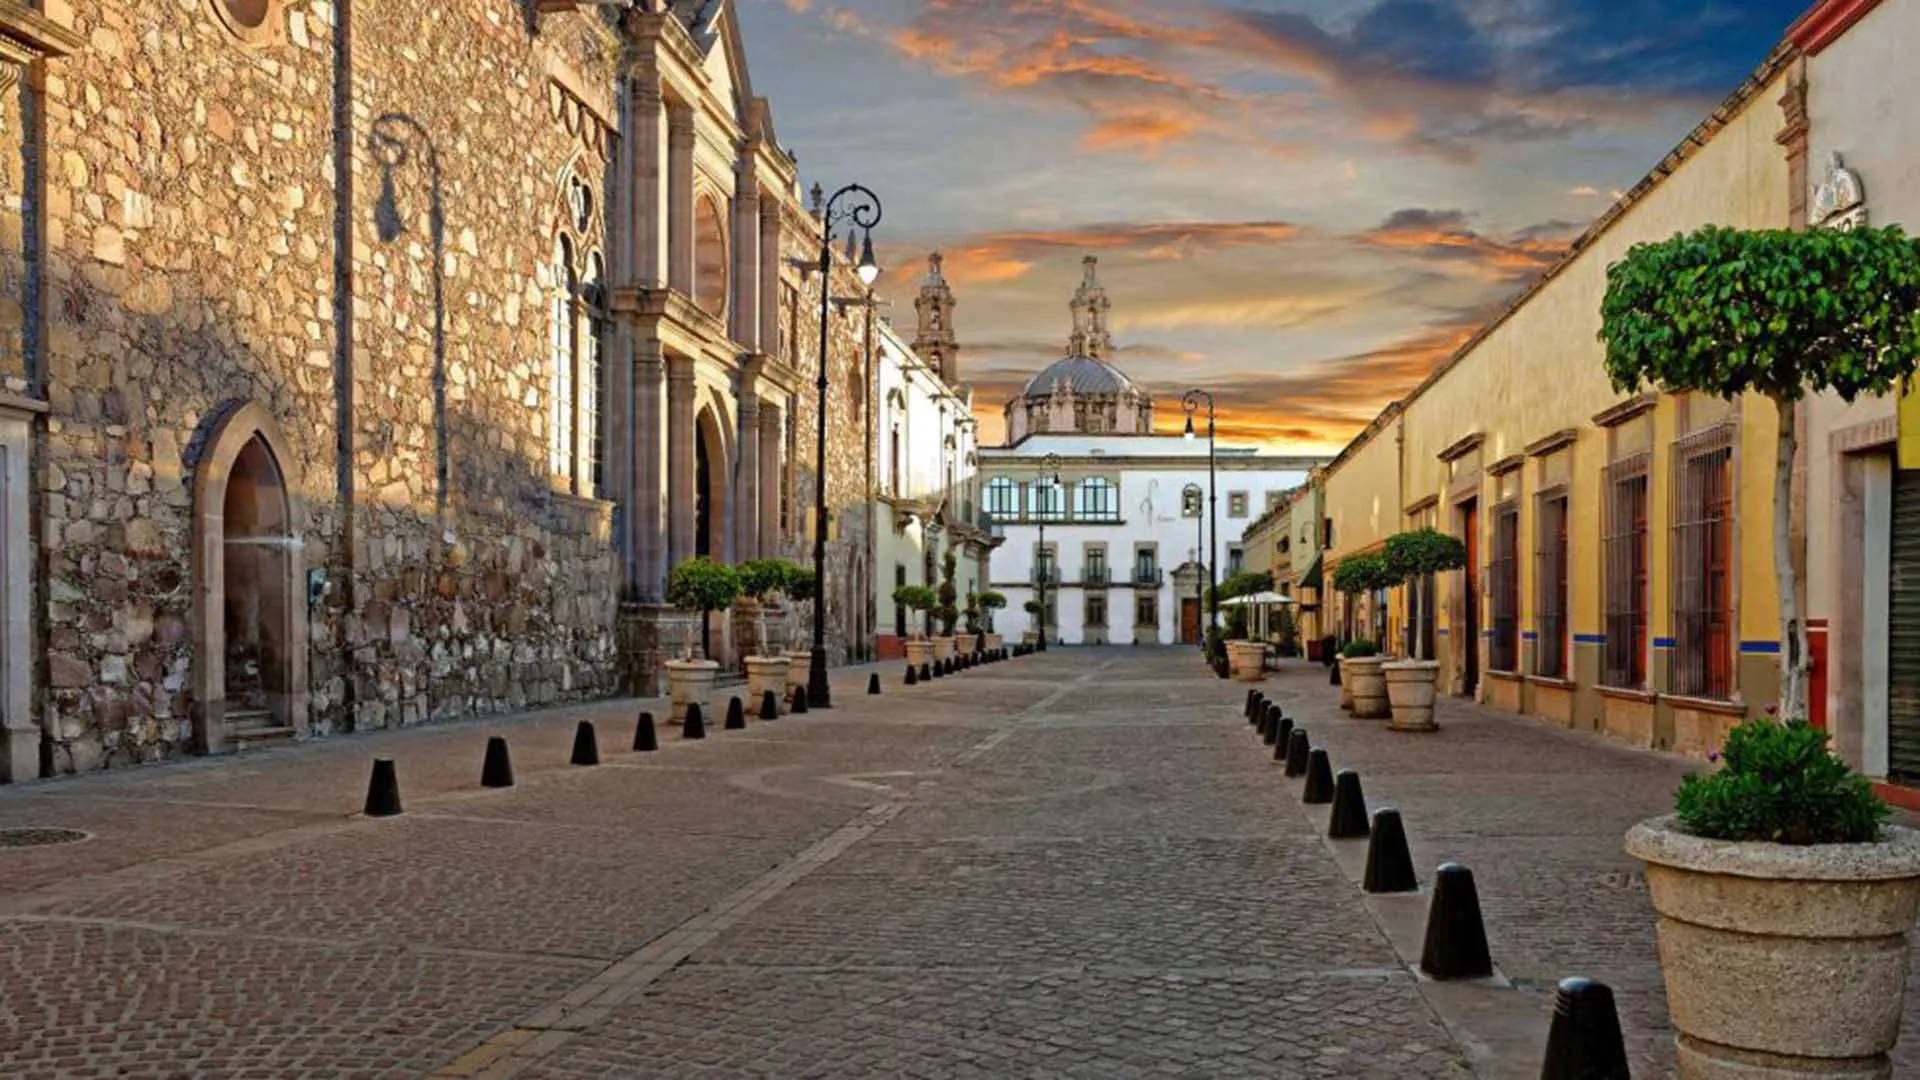 Nota sobre Recorre el centro histórico de Puebla